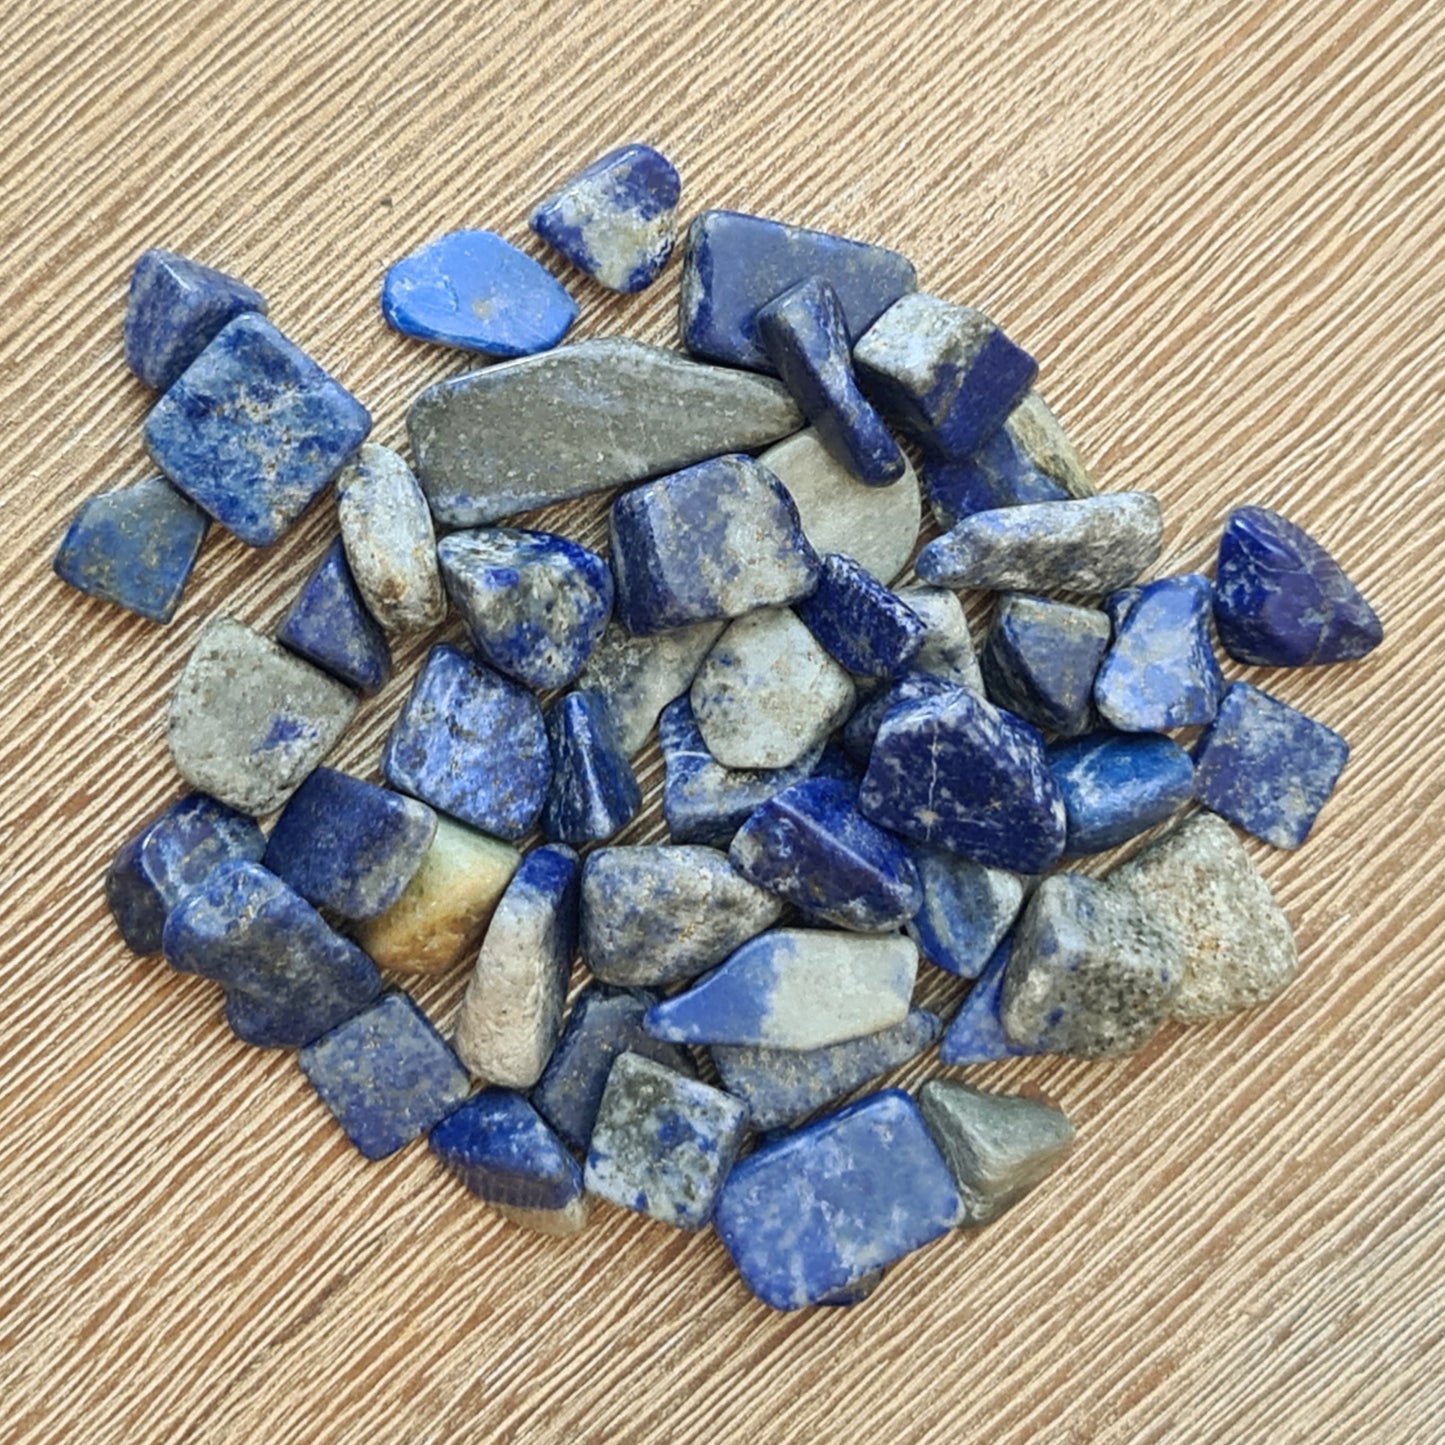 Lapis Lazuli Tumble - Small